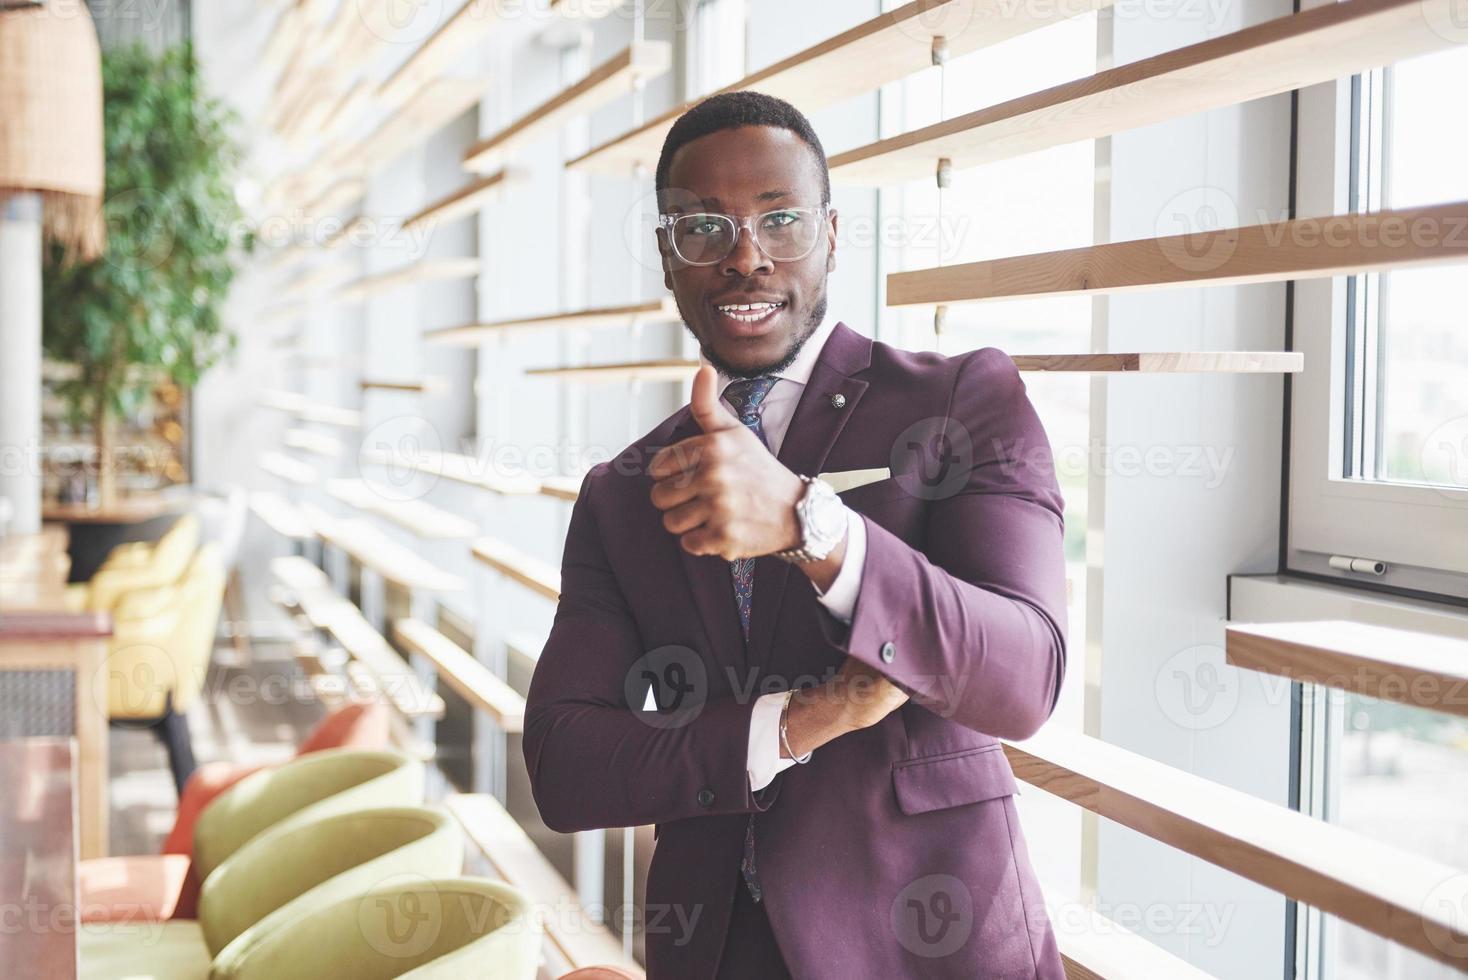 sorriso feliz de um empresário afro-americano de terno foto